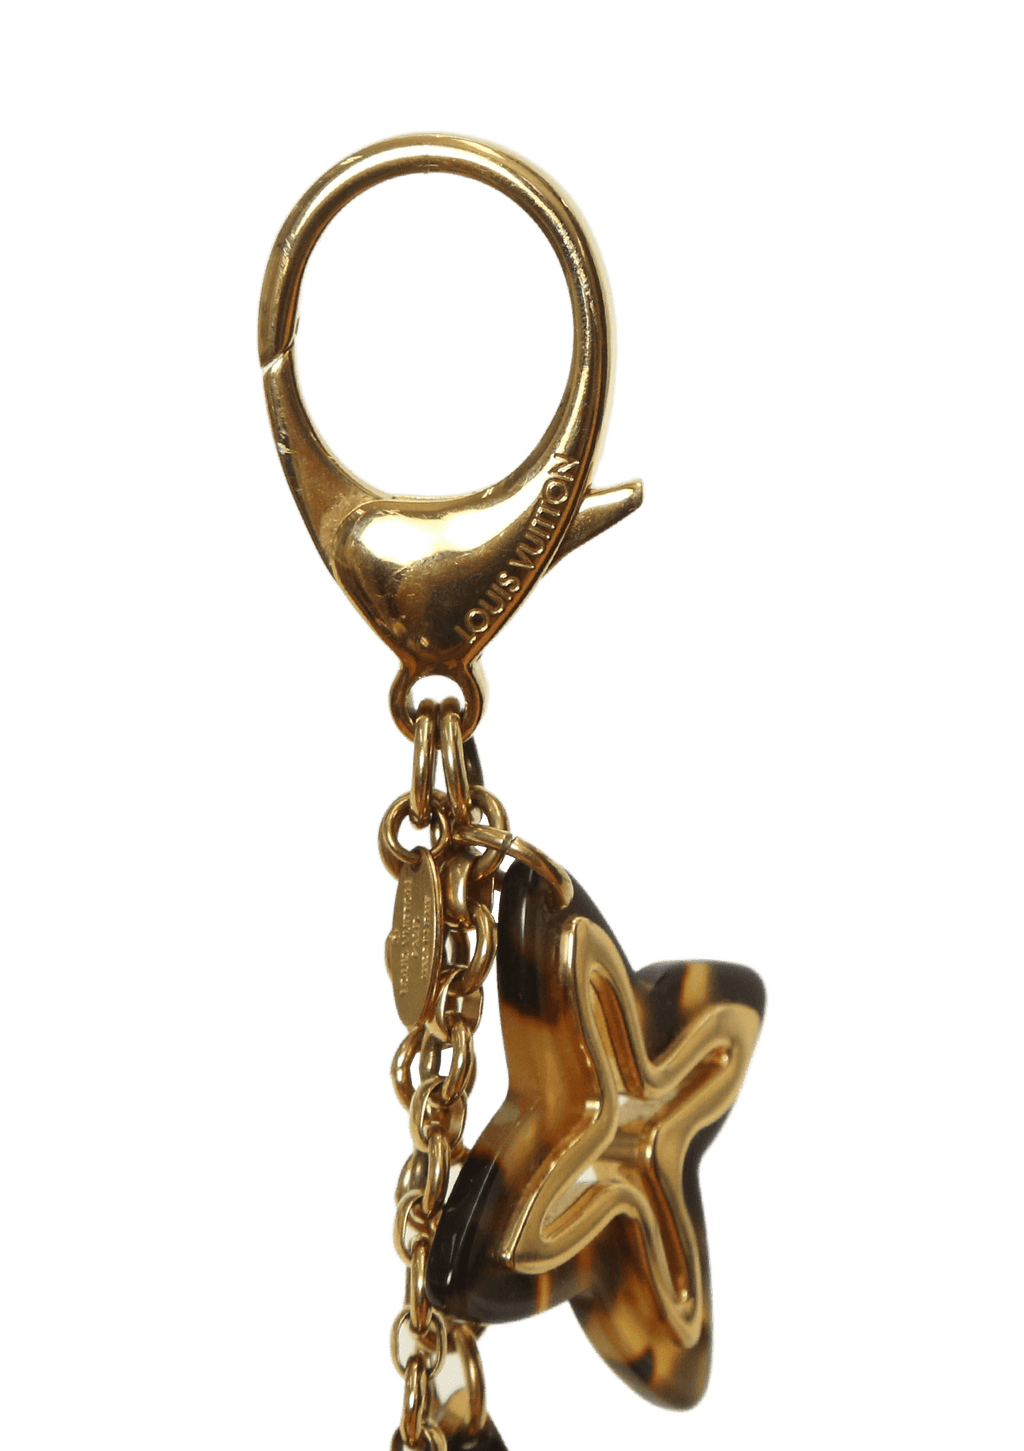 LOUIS VUITTON Bijoux Sac lnsolence Bag Charm Key Ring M65843 w